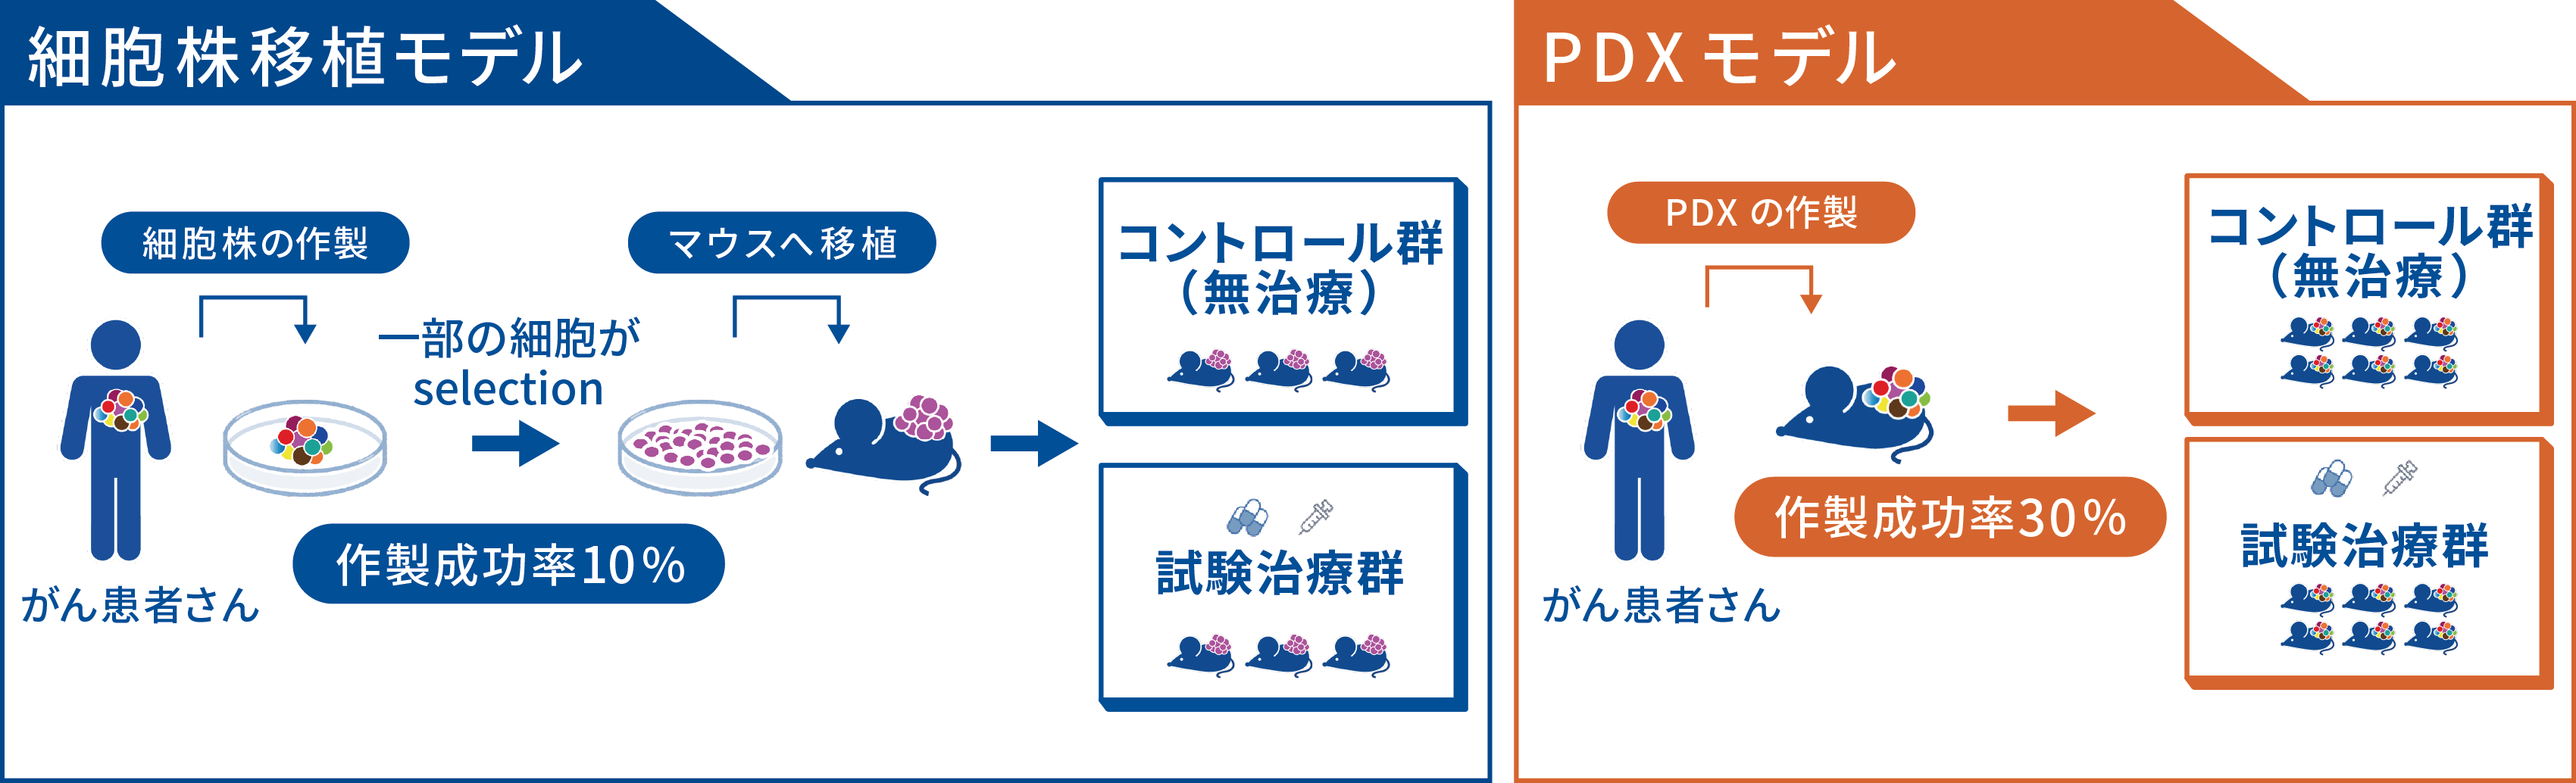 CDXモデルとPDXモデルの比較図